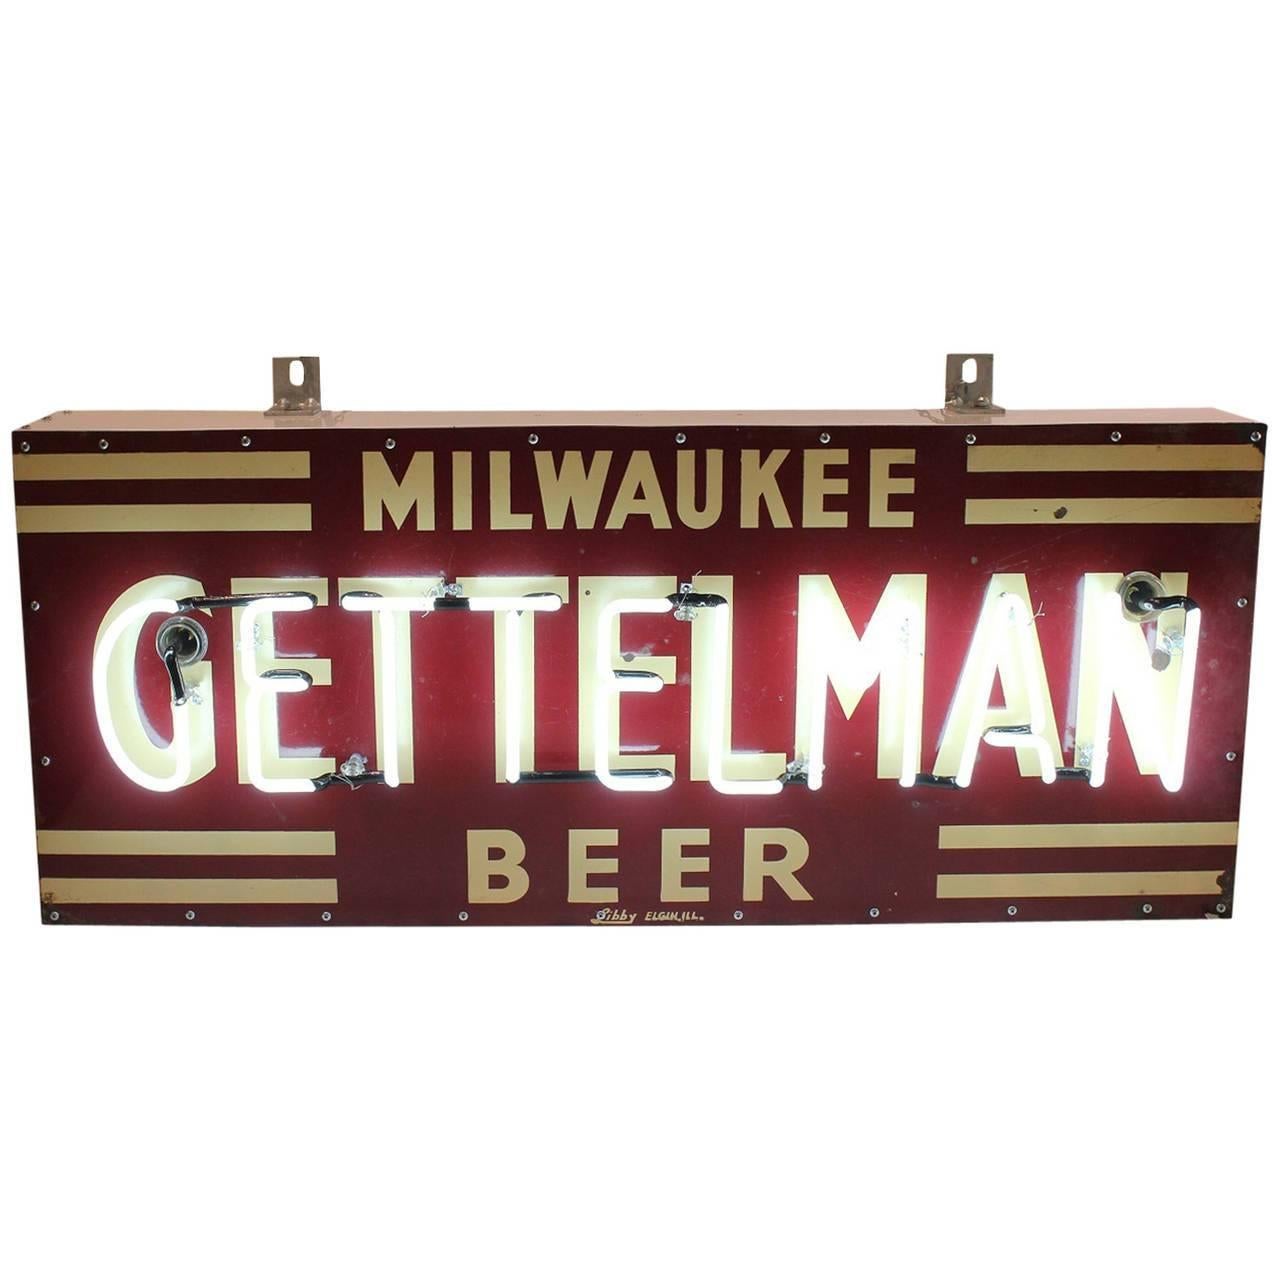  1930s Porcelain Neon Sign "Milwaukee Gettelman Beer"